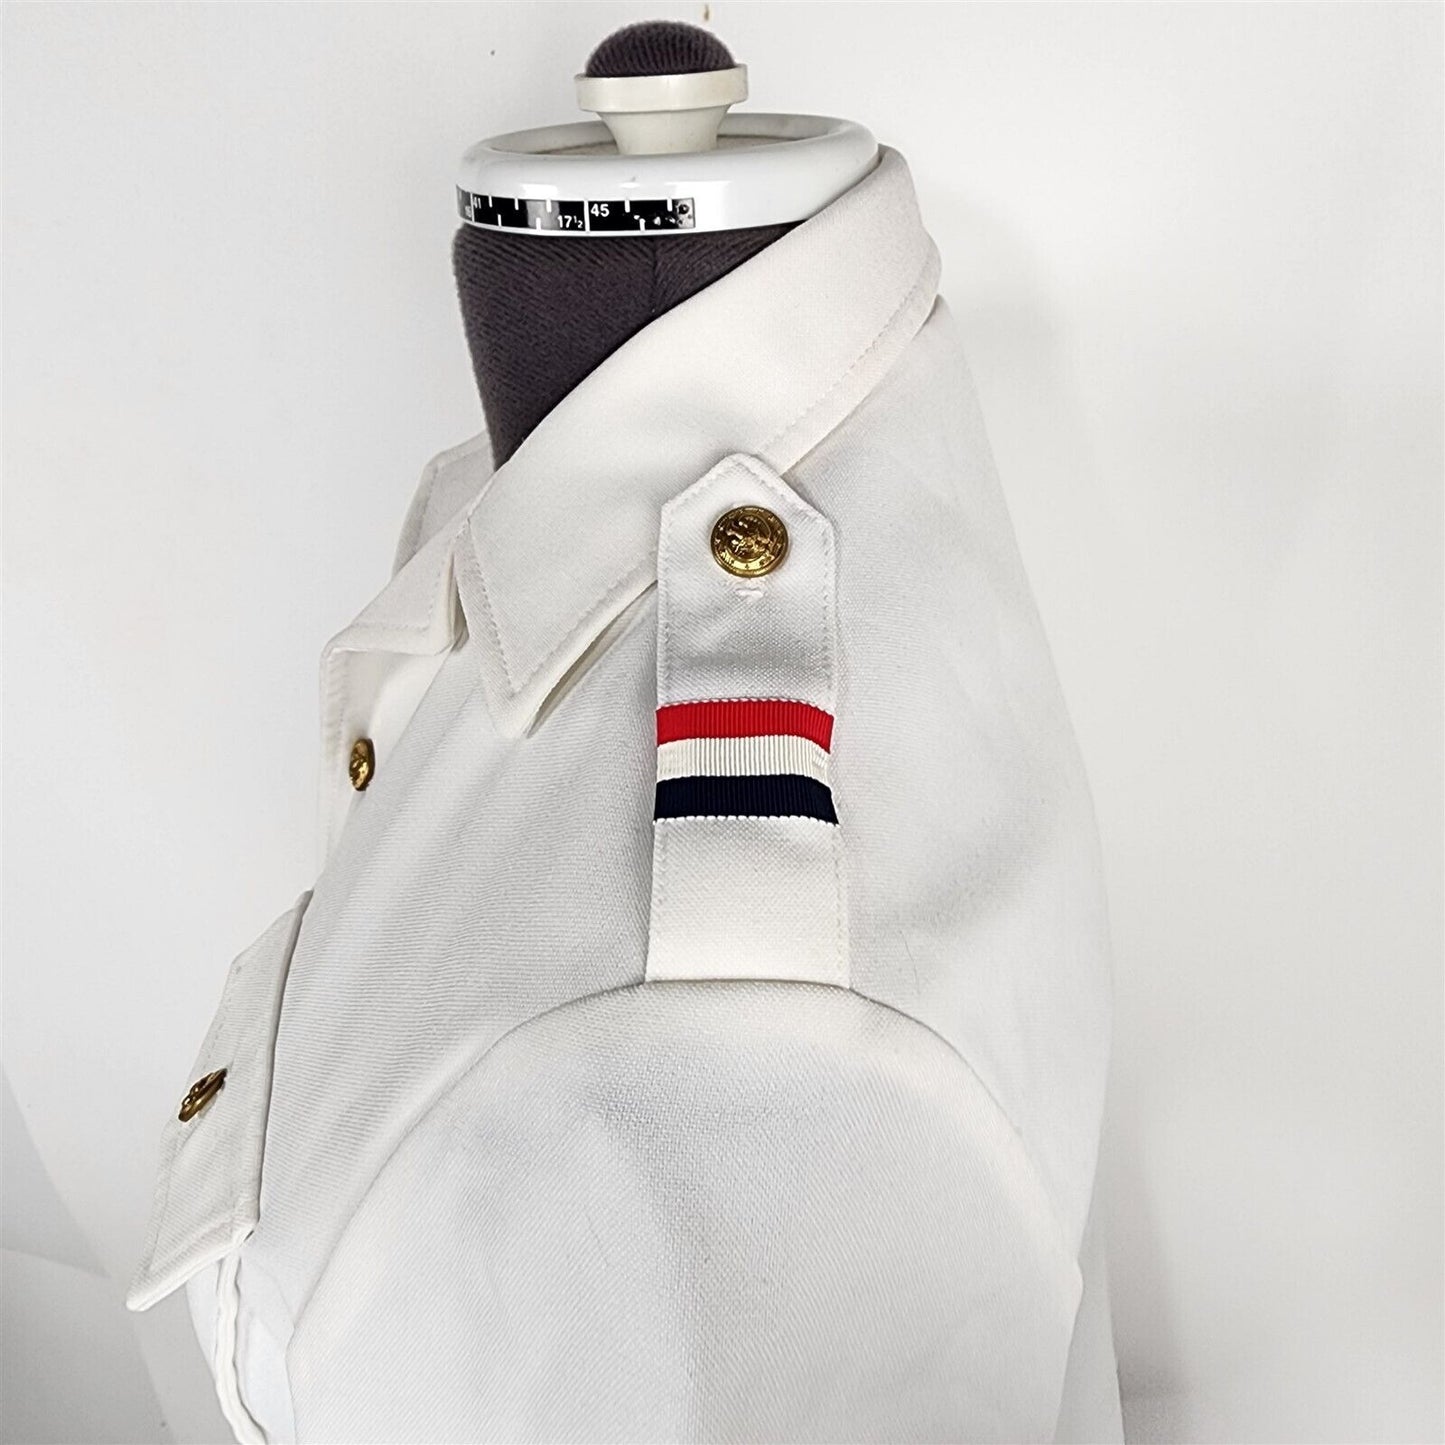 Vintage Dana Point White Uniform Button Front Top Womens Size 6/8